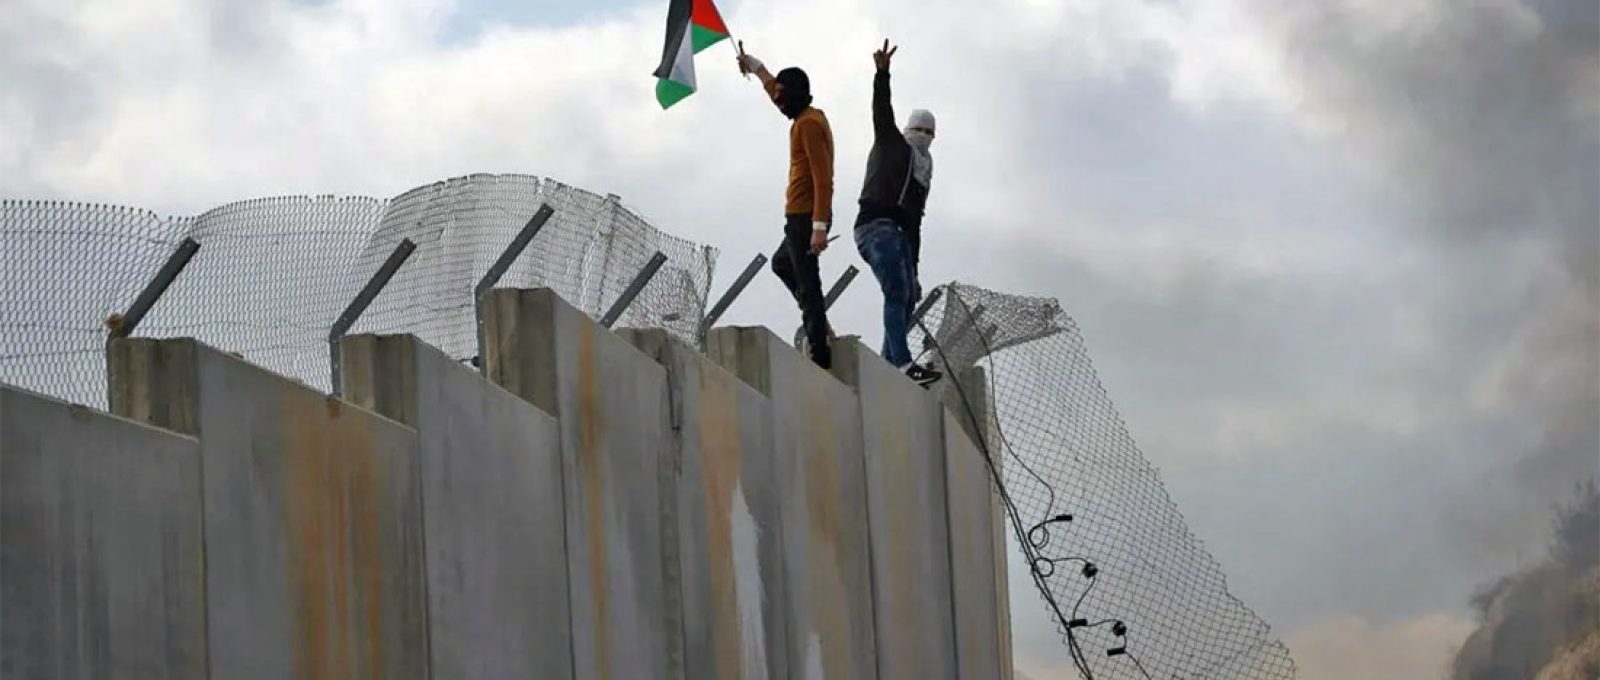 Palestinos escalam muro de separação de Israel entre a aldeia de Bilin, na Cisjordânia, 17 de fevereiro de 2017 (Abbas Momani/AFP via Getty Images).